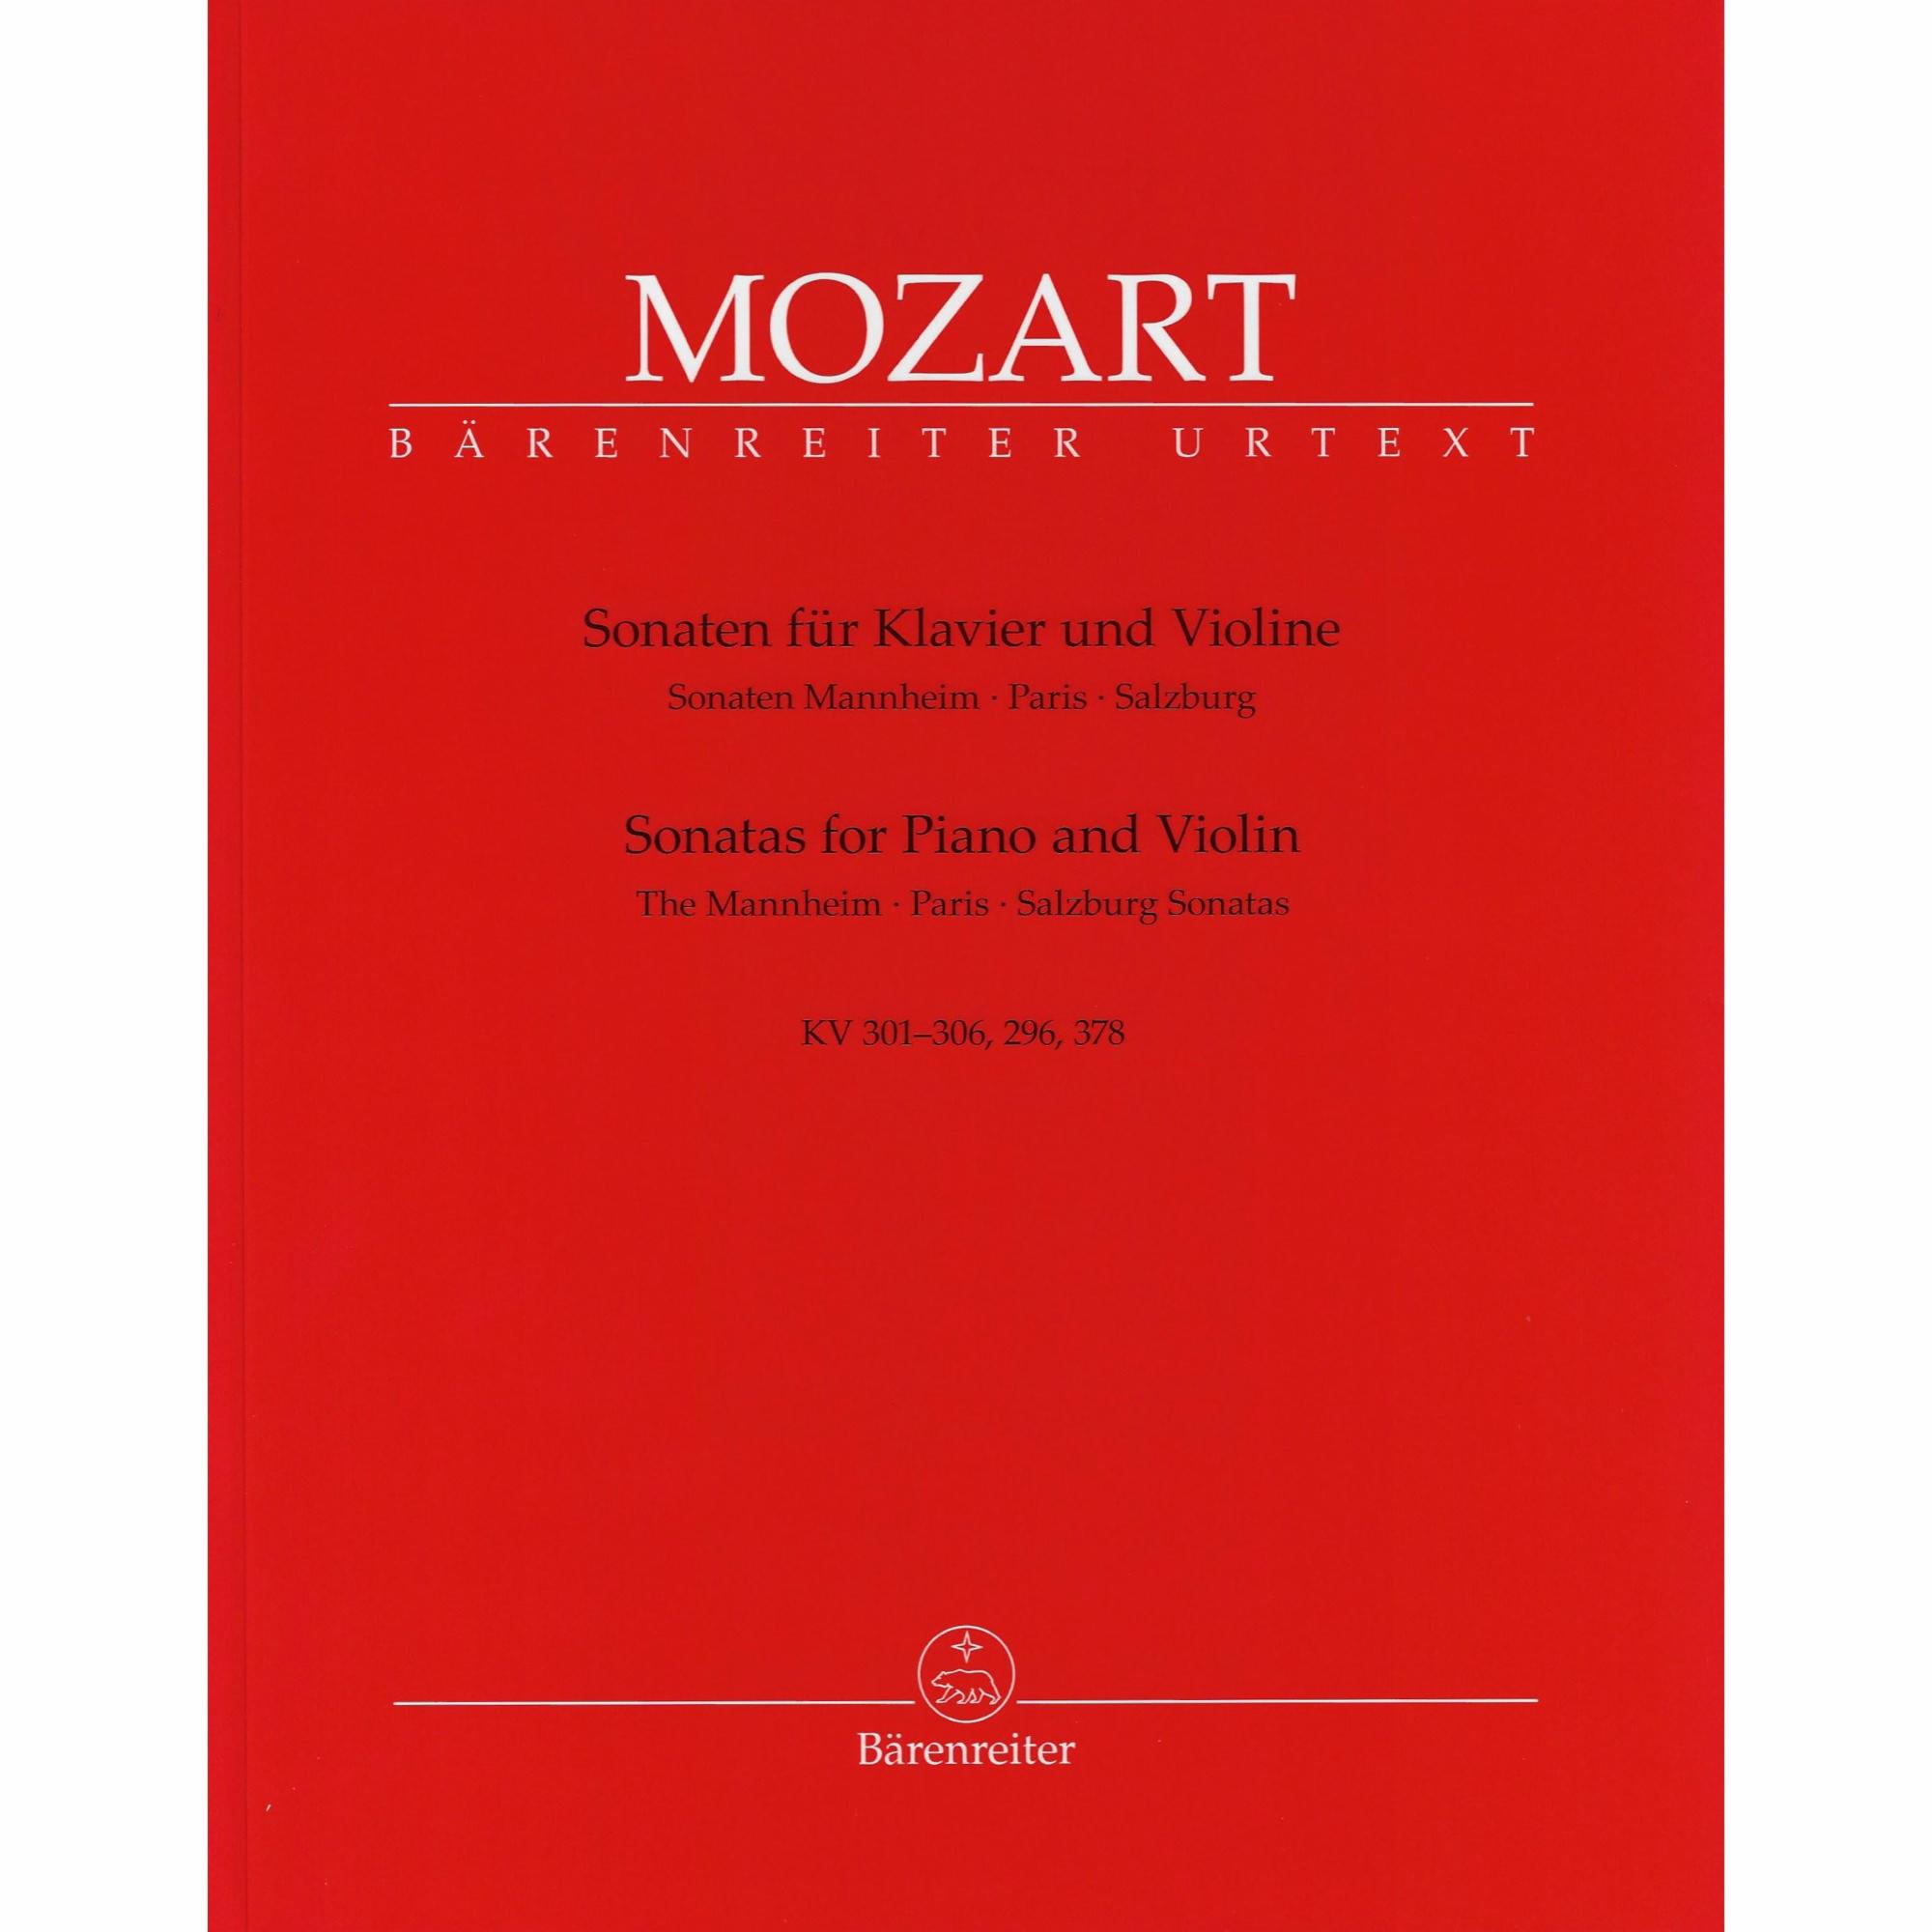 Mozart -- The Mannheim, Paris & Salzburg Sonatas for Violin and Piano